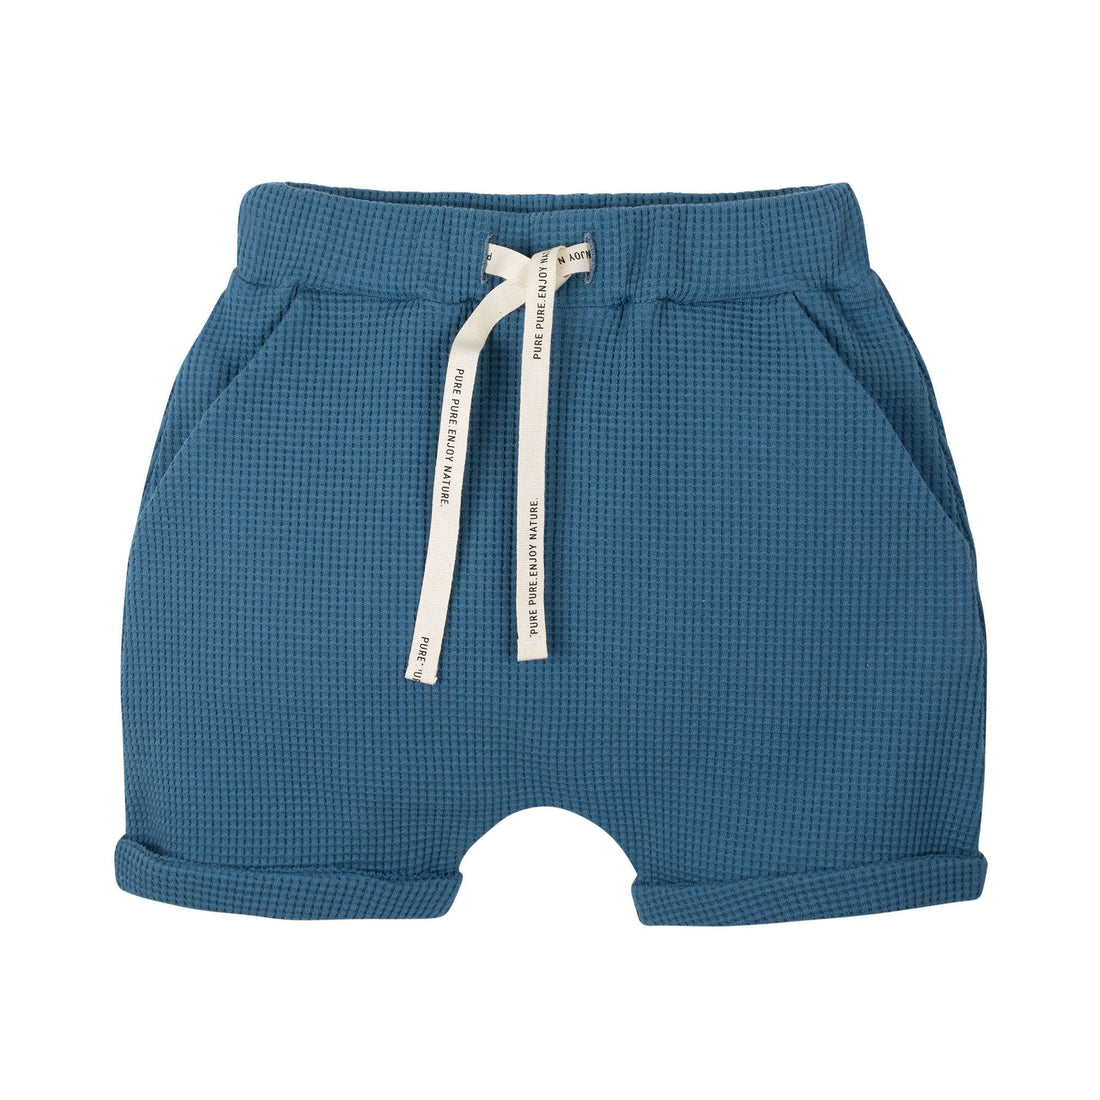 Kurze Hose aus Baumwolle mit Waffle-Muster in blau von Pure Pure für Mädchen und Jungen.